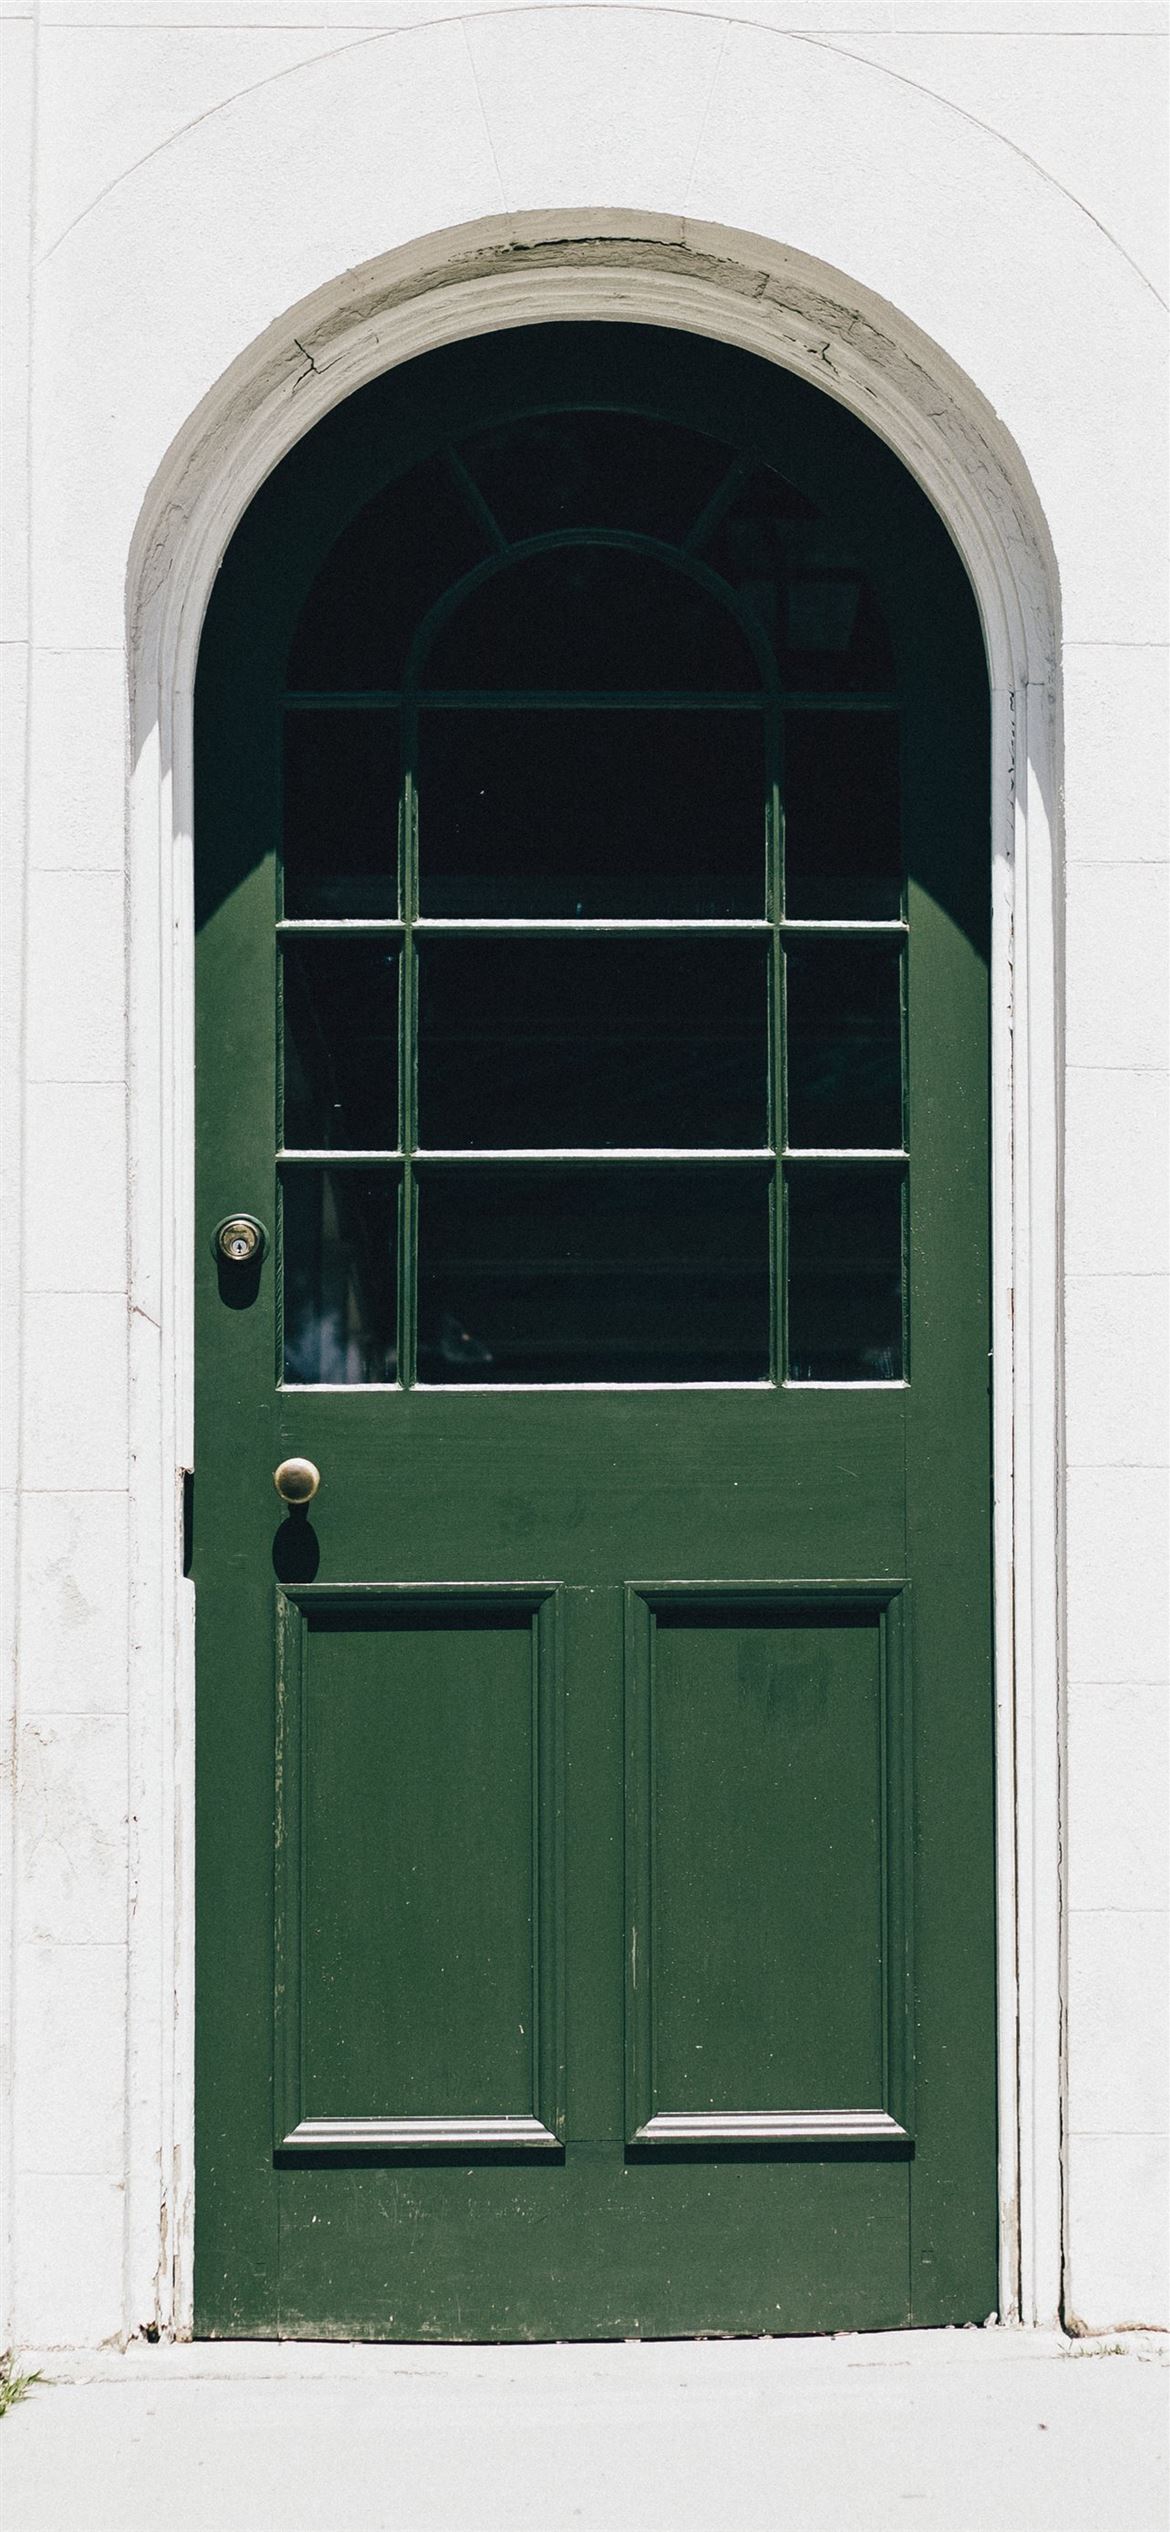 green wooden storm glass door close iPhone 12 Wallpaper Free Download